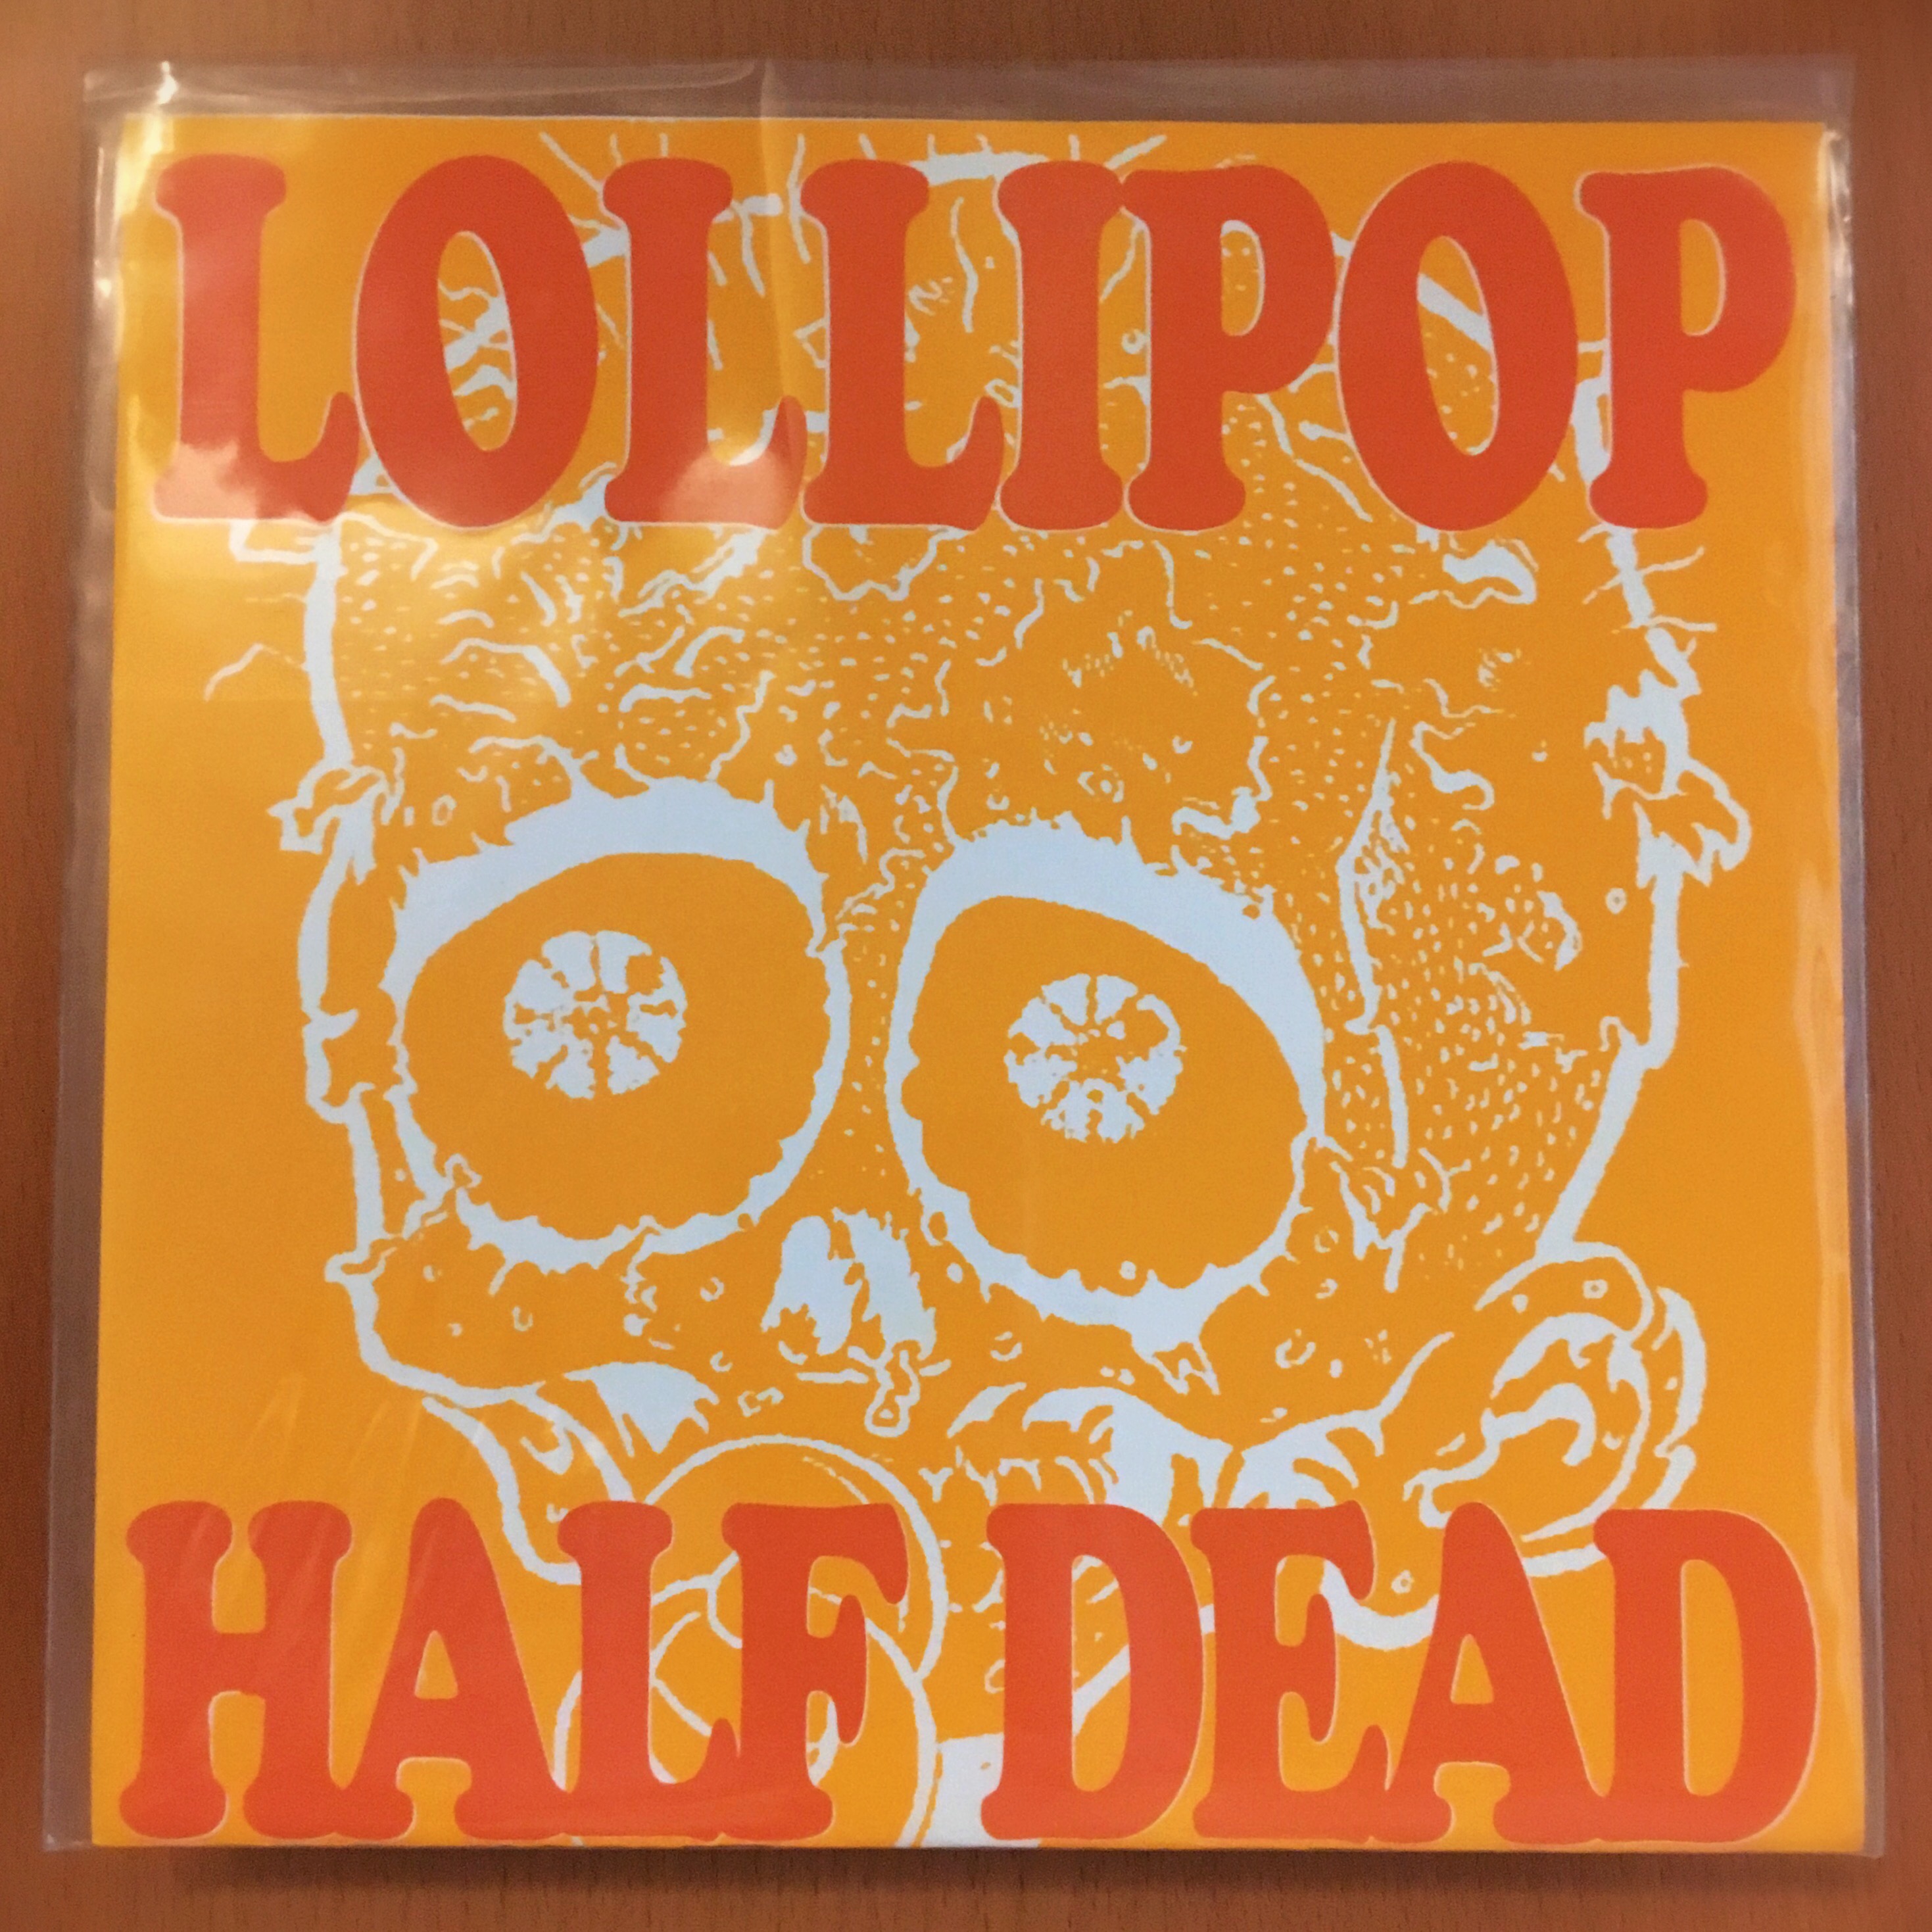 Lollipop, Half Dead 7in